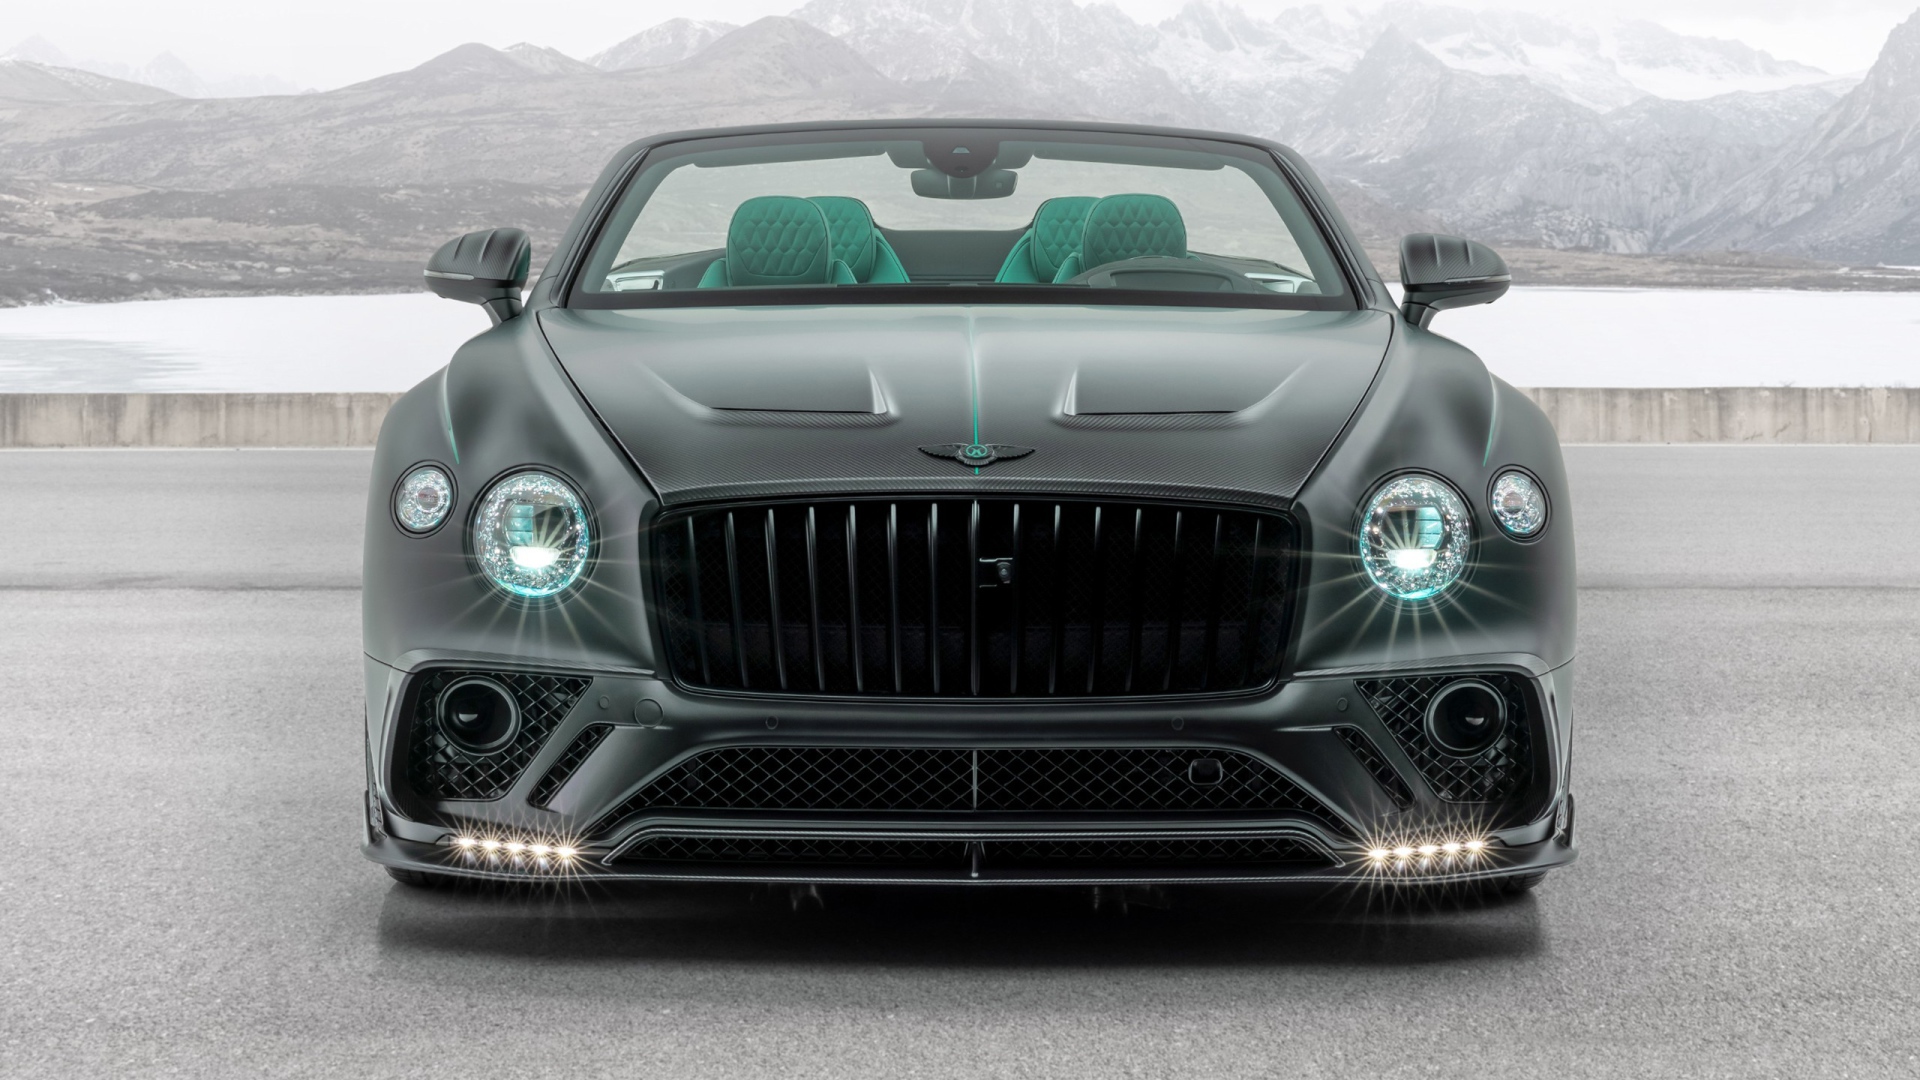 Автомобиль Mansory Bentley Continental GT V8 Convertible 2020 года с включенными фарами